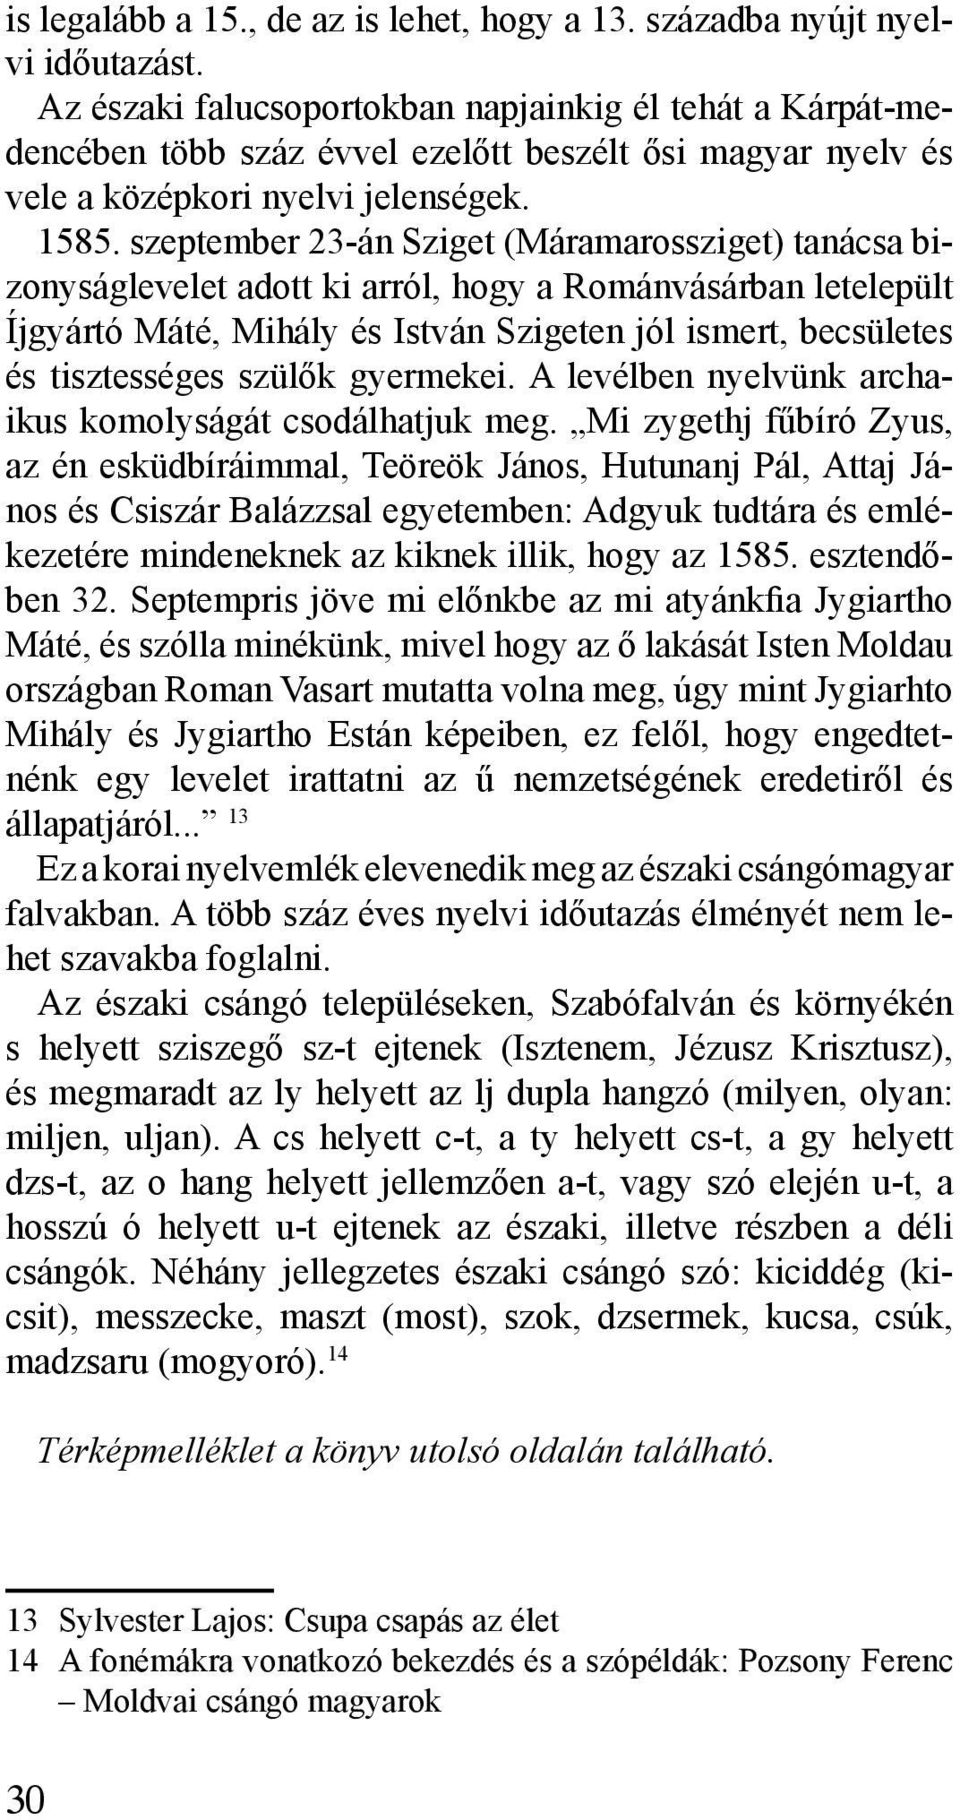 szeptember 23-án Sziget (Máramarossziget) tanácsa bizonyságlevelet adott ki arról, hogy a Románvásárban letelepült Íjgyártó Máté, Mihály és István Szigeten jól ismert, becsületes és tisztességes